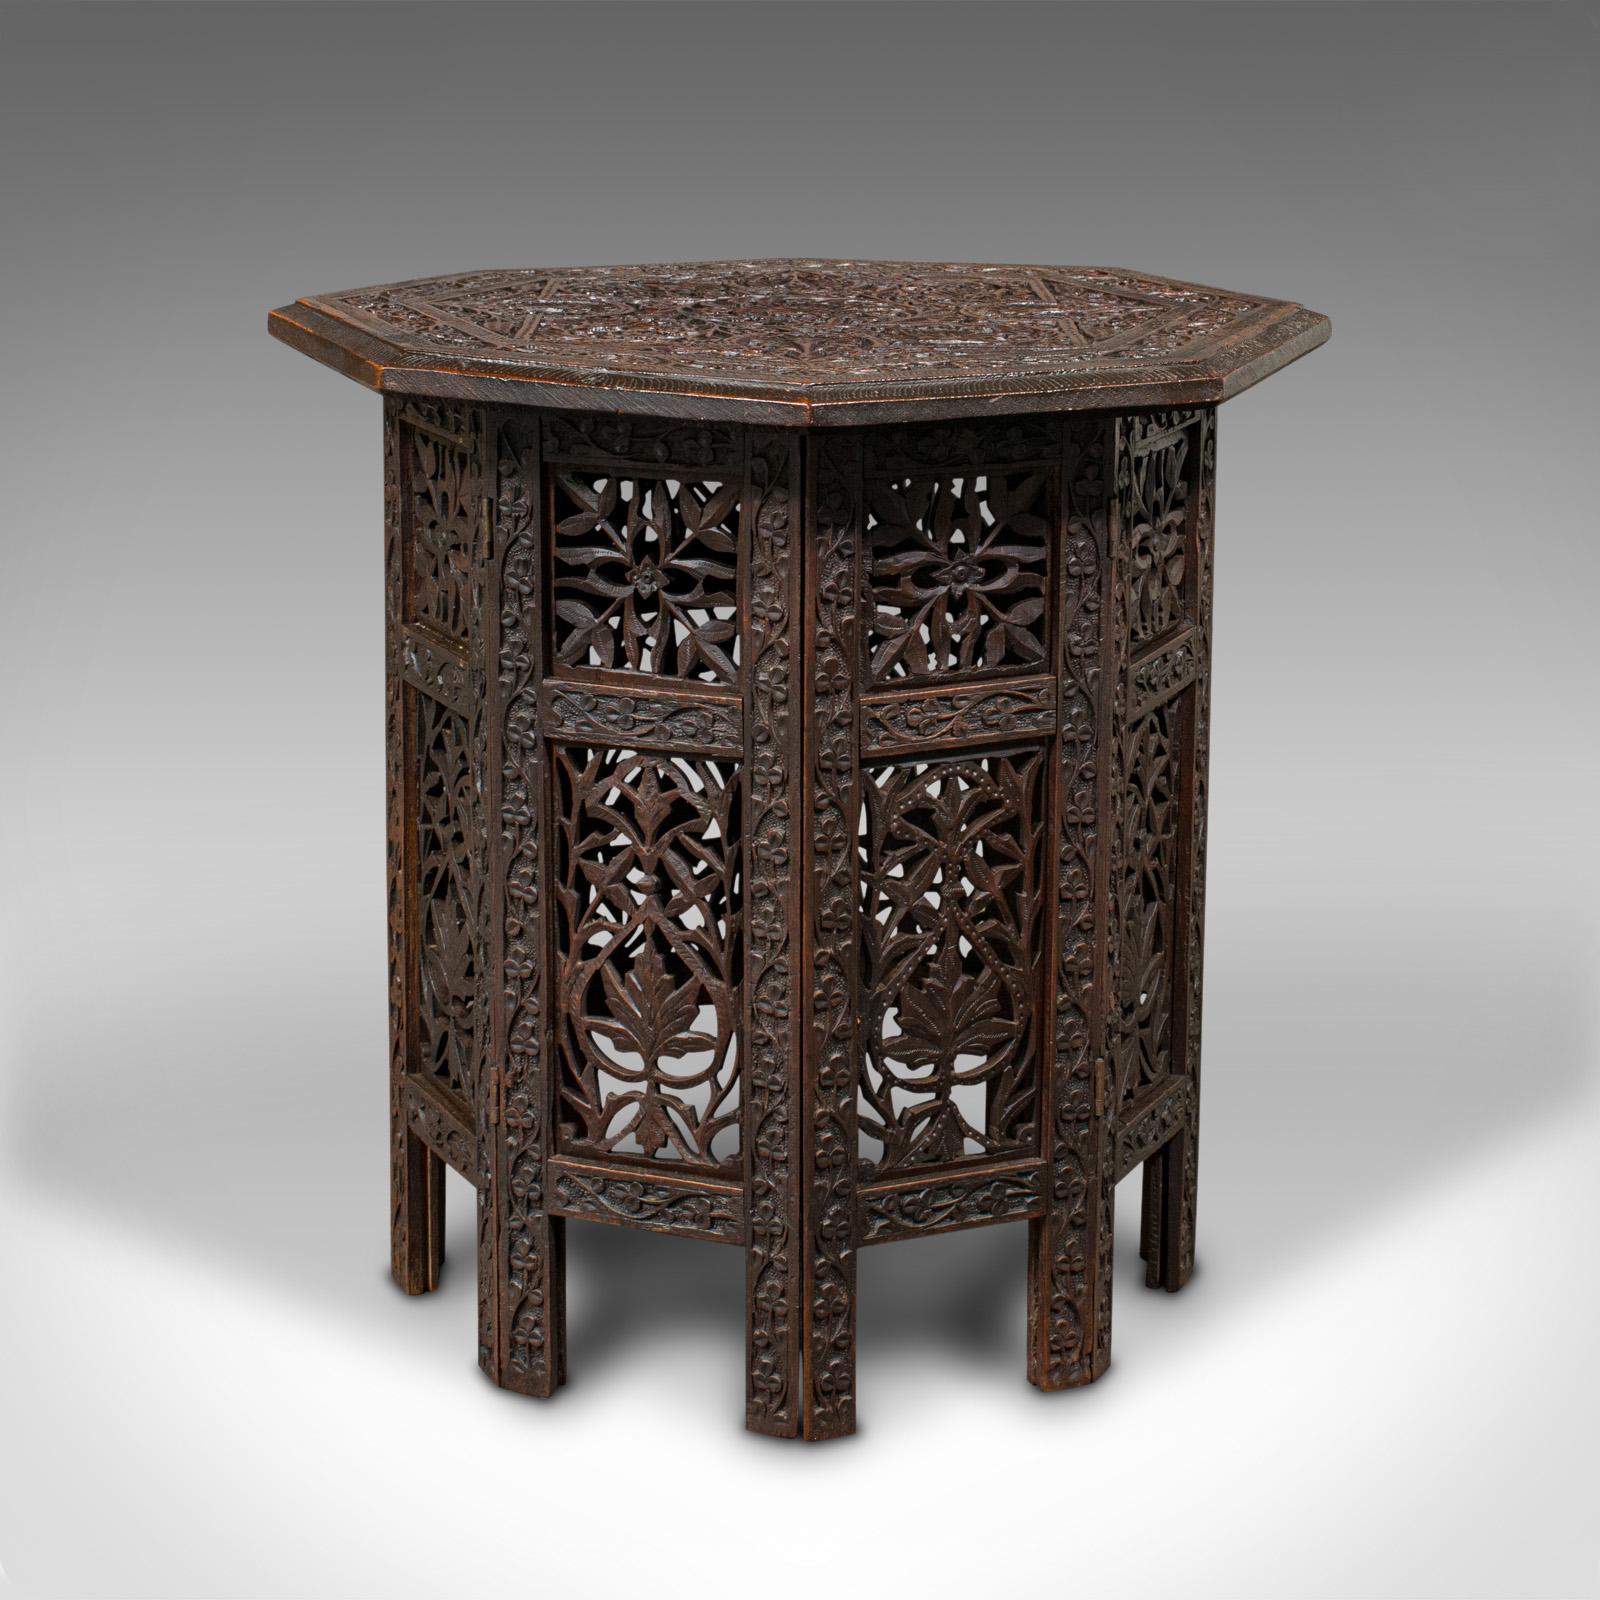 Il s'agit d'une ancienne table de lampe pliante. Table d'appoint ou d'appoint anglo-indienne, datant de la période édouardienne, vers 1910.

Foldes ornementés avec une forme de pliage octogonal caractéristique.
Présente une patine d'ancienneté